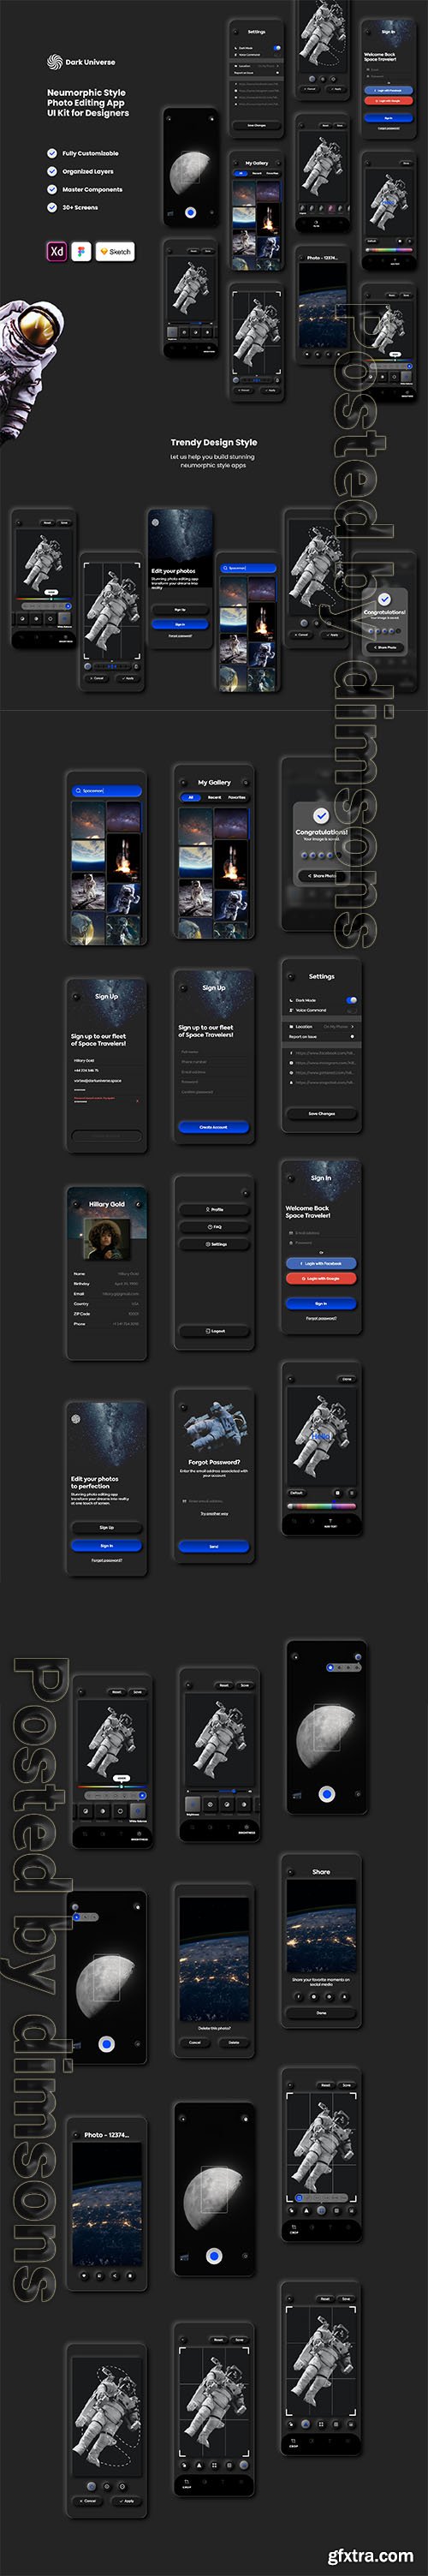 Dark Universe - Photo Editing App Neumorphic UI Kit (Dark Mode)